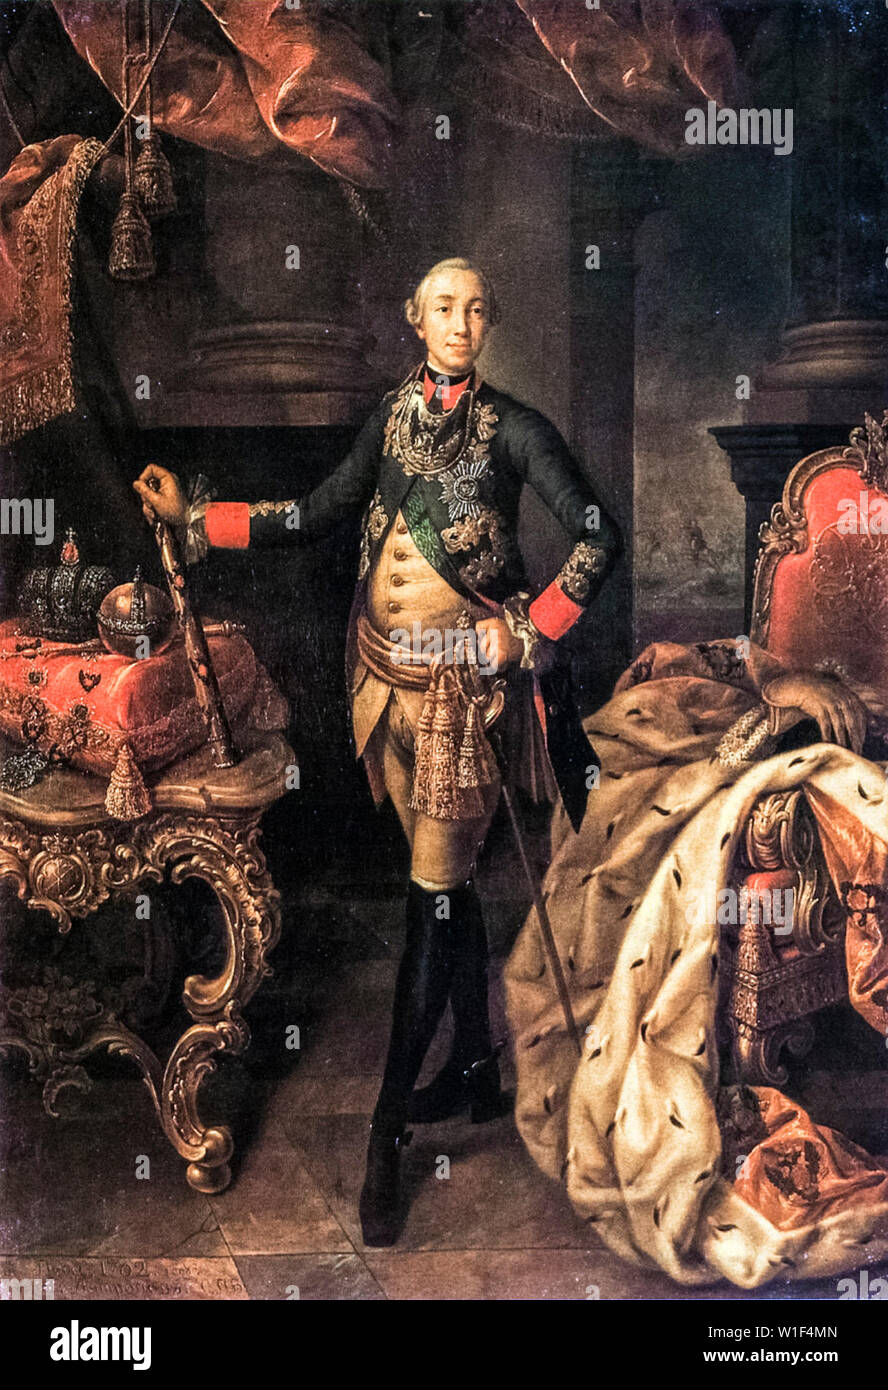 Alexsey Antropov, Peter III, empereur de Russie, 1728-1762, portrait, 1762 Banque D'Images